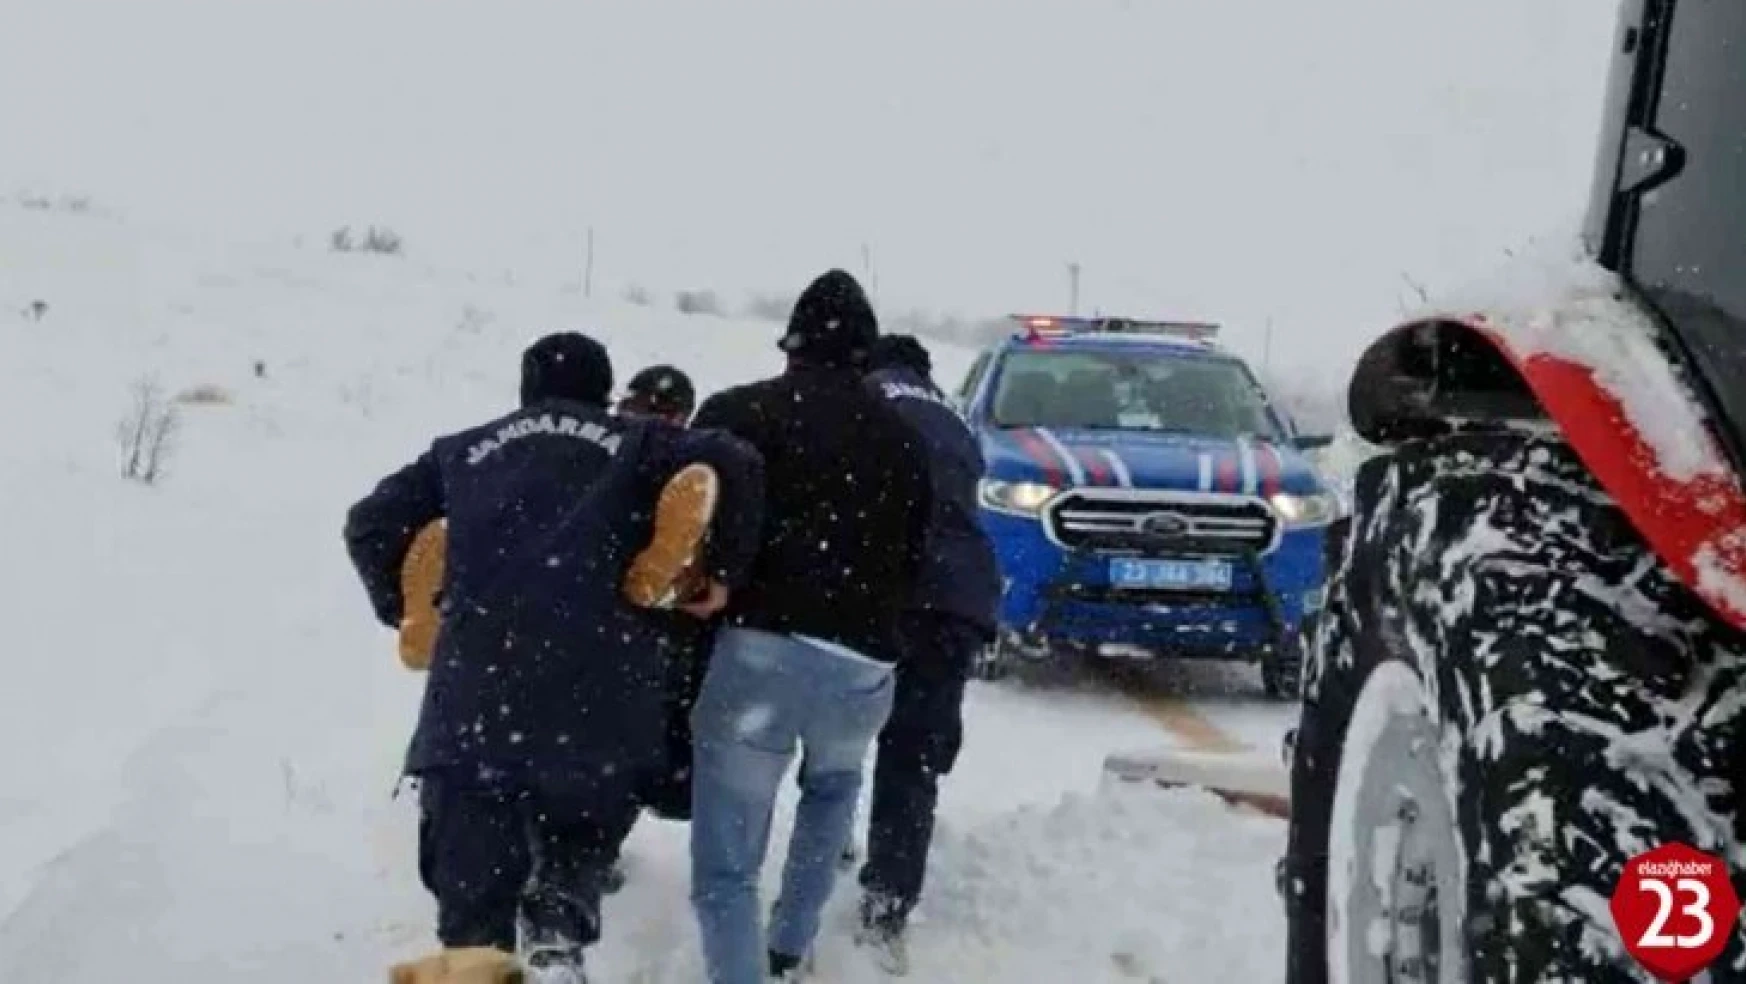 Donmak Üzereydi, Kar Üzerinde Baygın Haldeyken Jandarma Son Anda Kurtardı